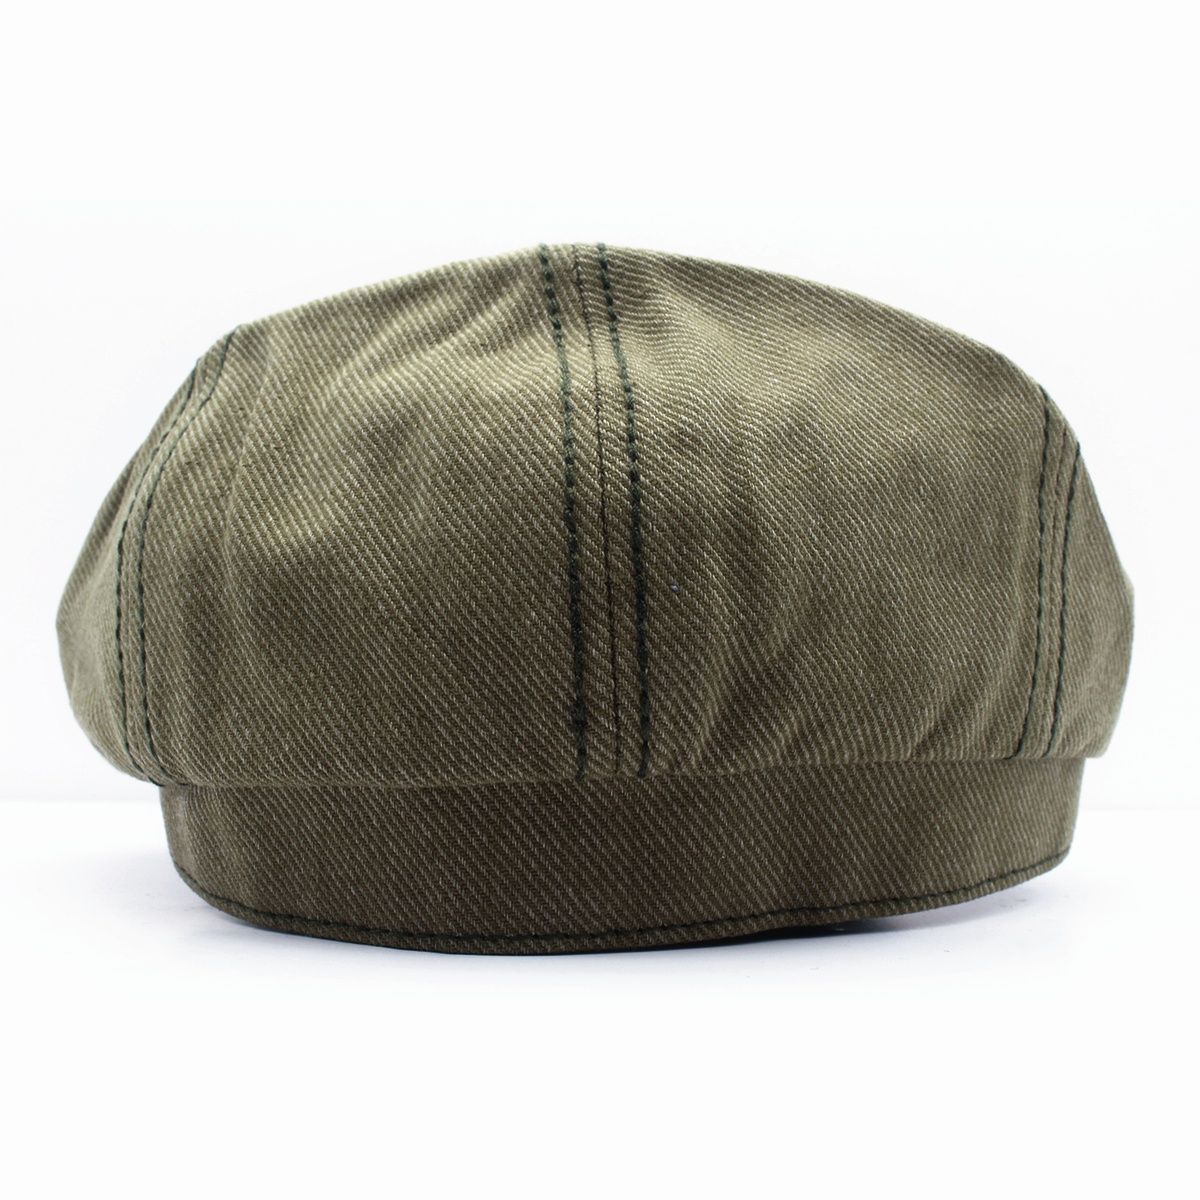 キャスケット帽 無地 シック ツイル 綿 キャップハンチング帽子 メンズ レディース カーキ色 58cm KC75-3